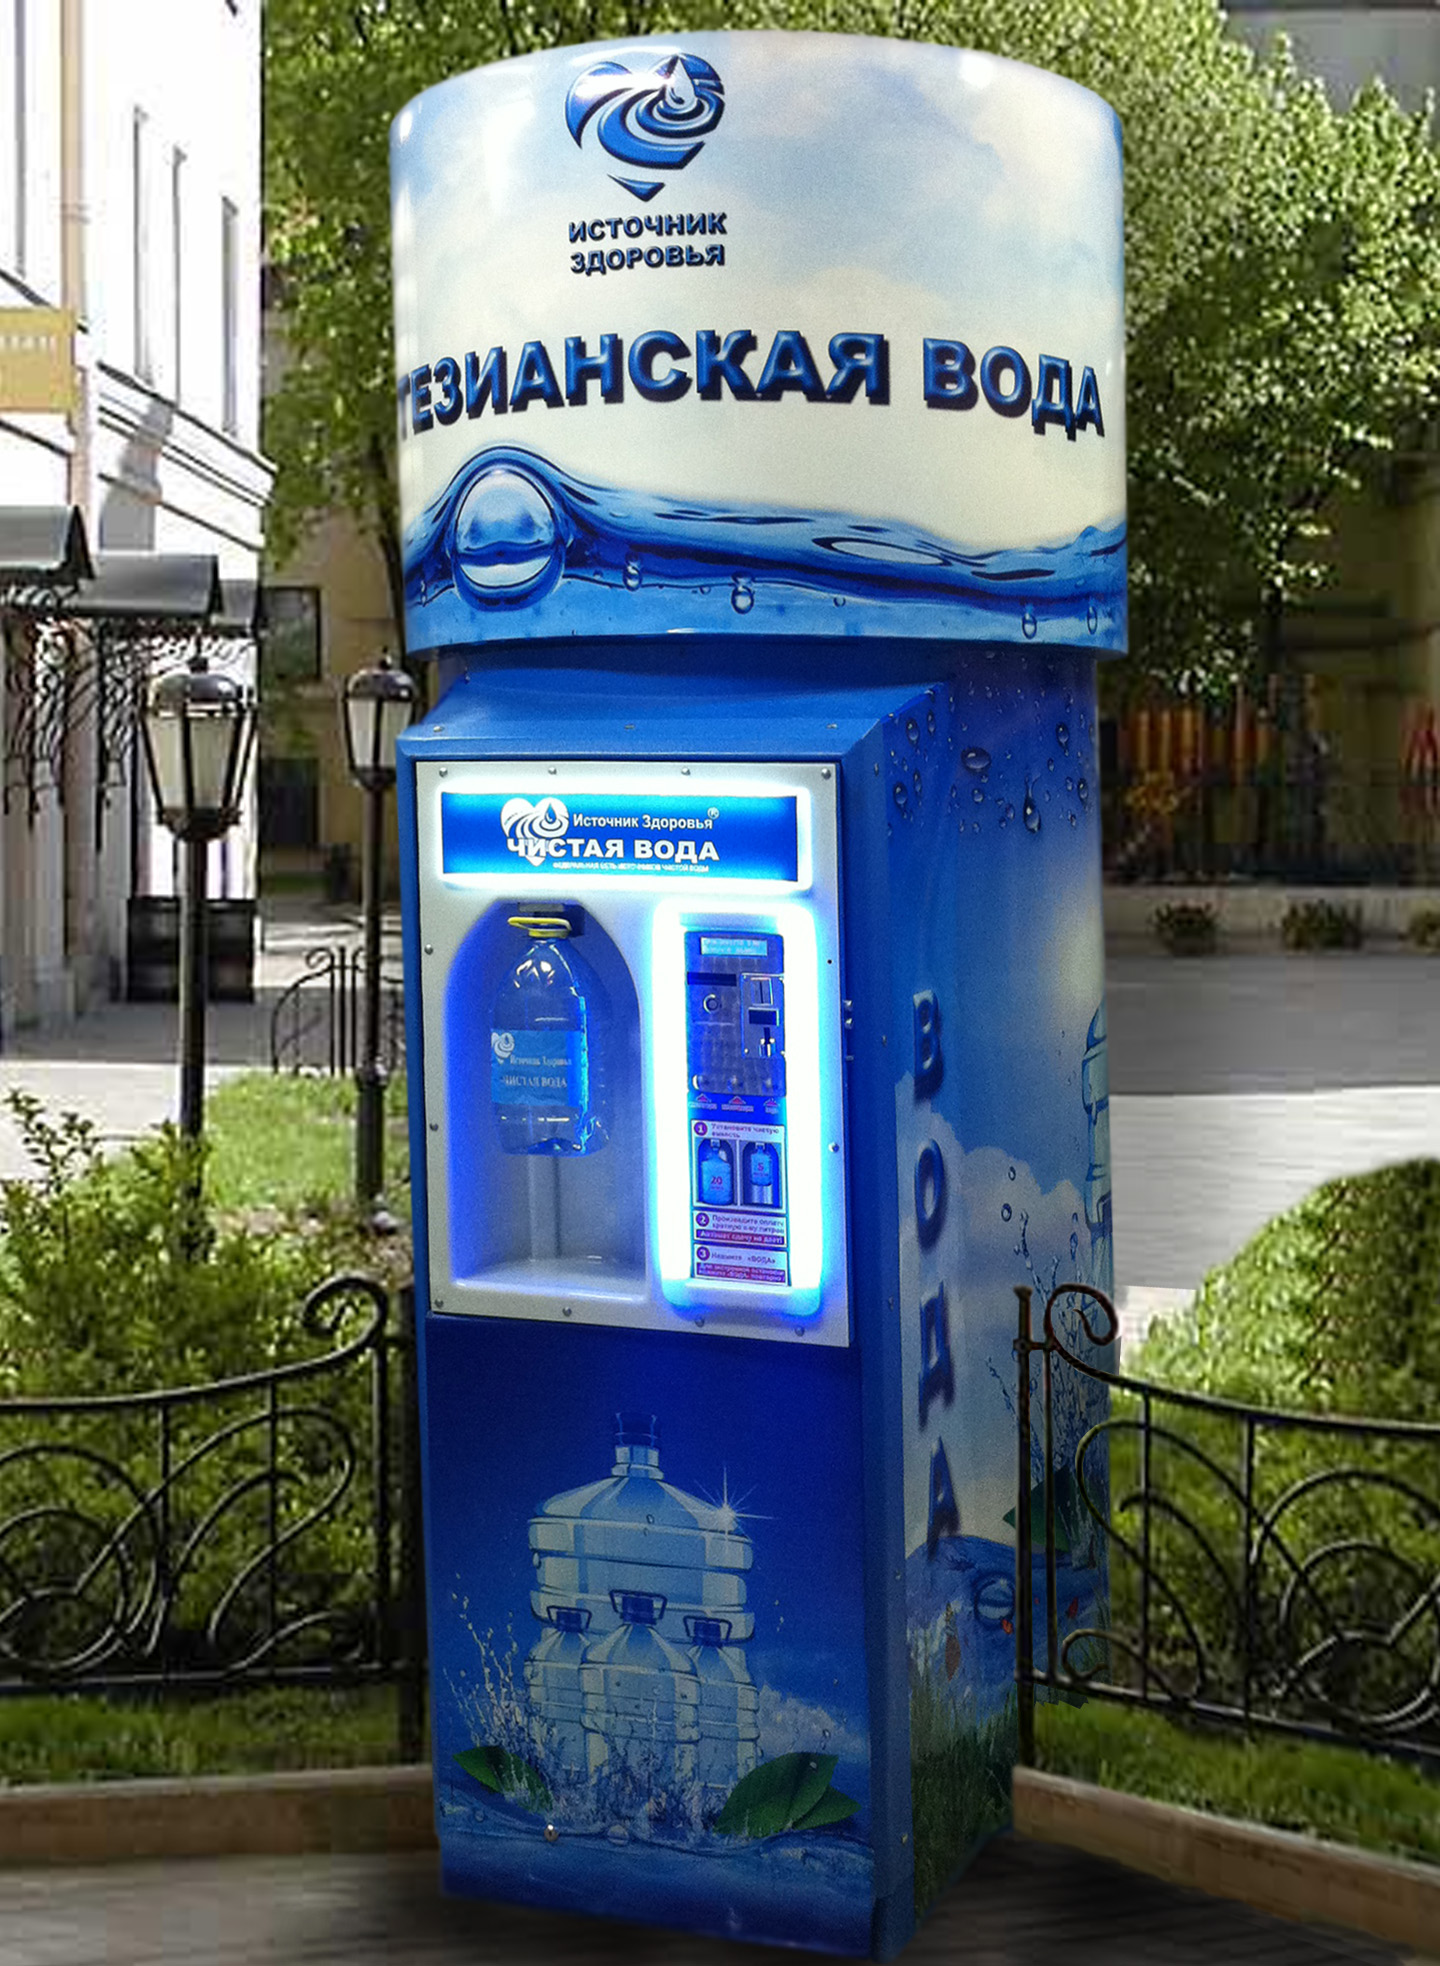 Продажа воды на дом. Автомат с водой. Аппарат для воды. Автомат для розлива воды. Аппарат для розлива воды на улице.